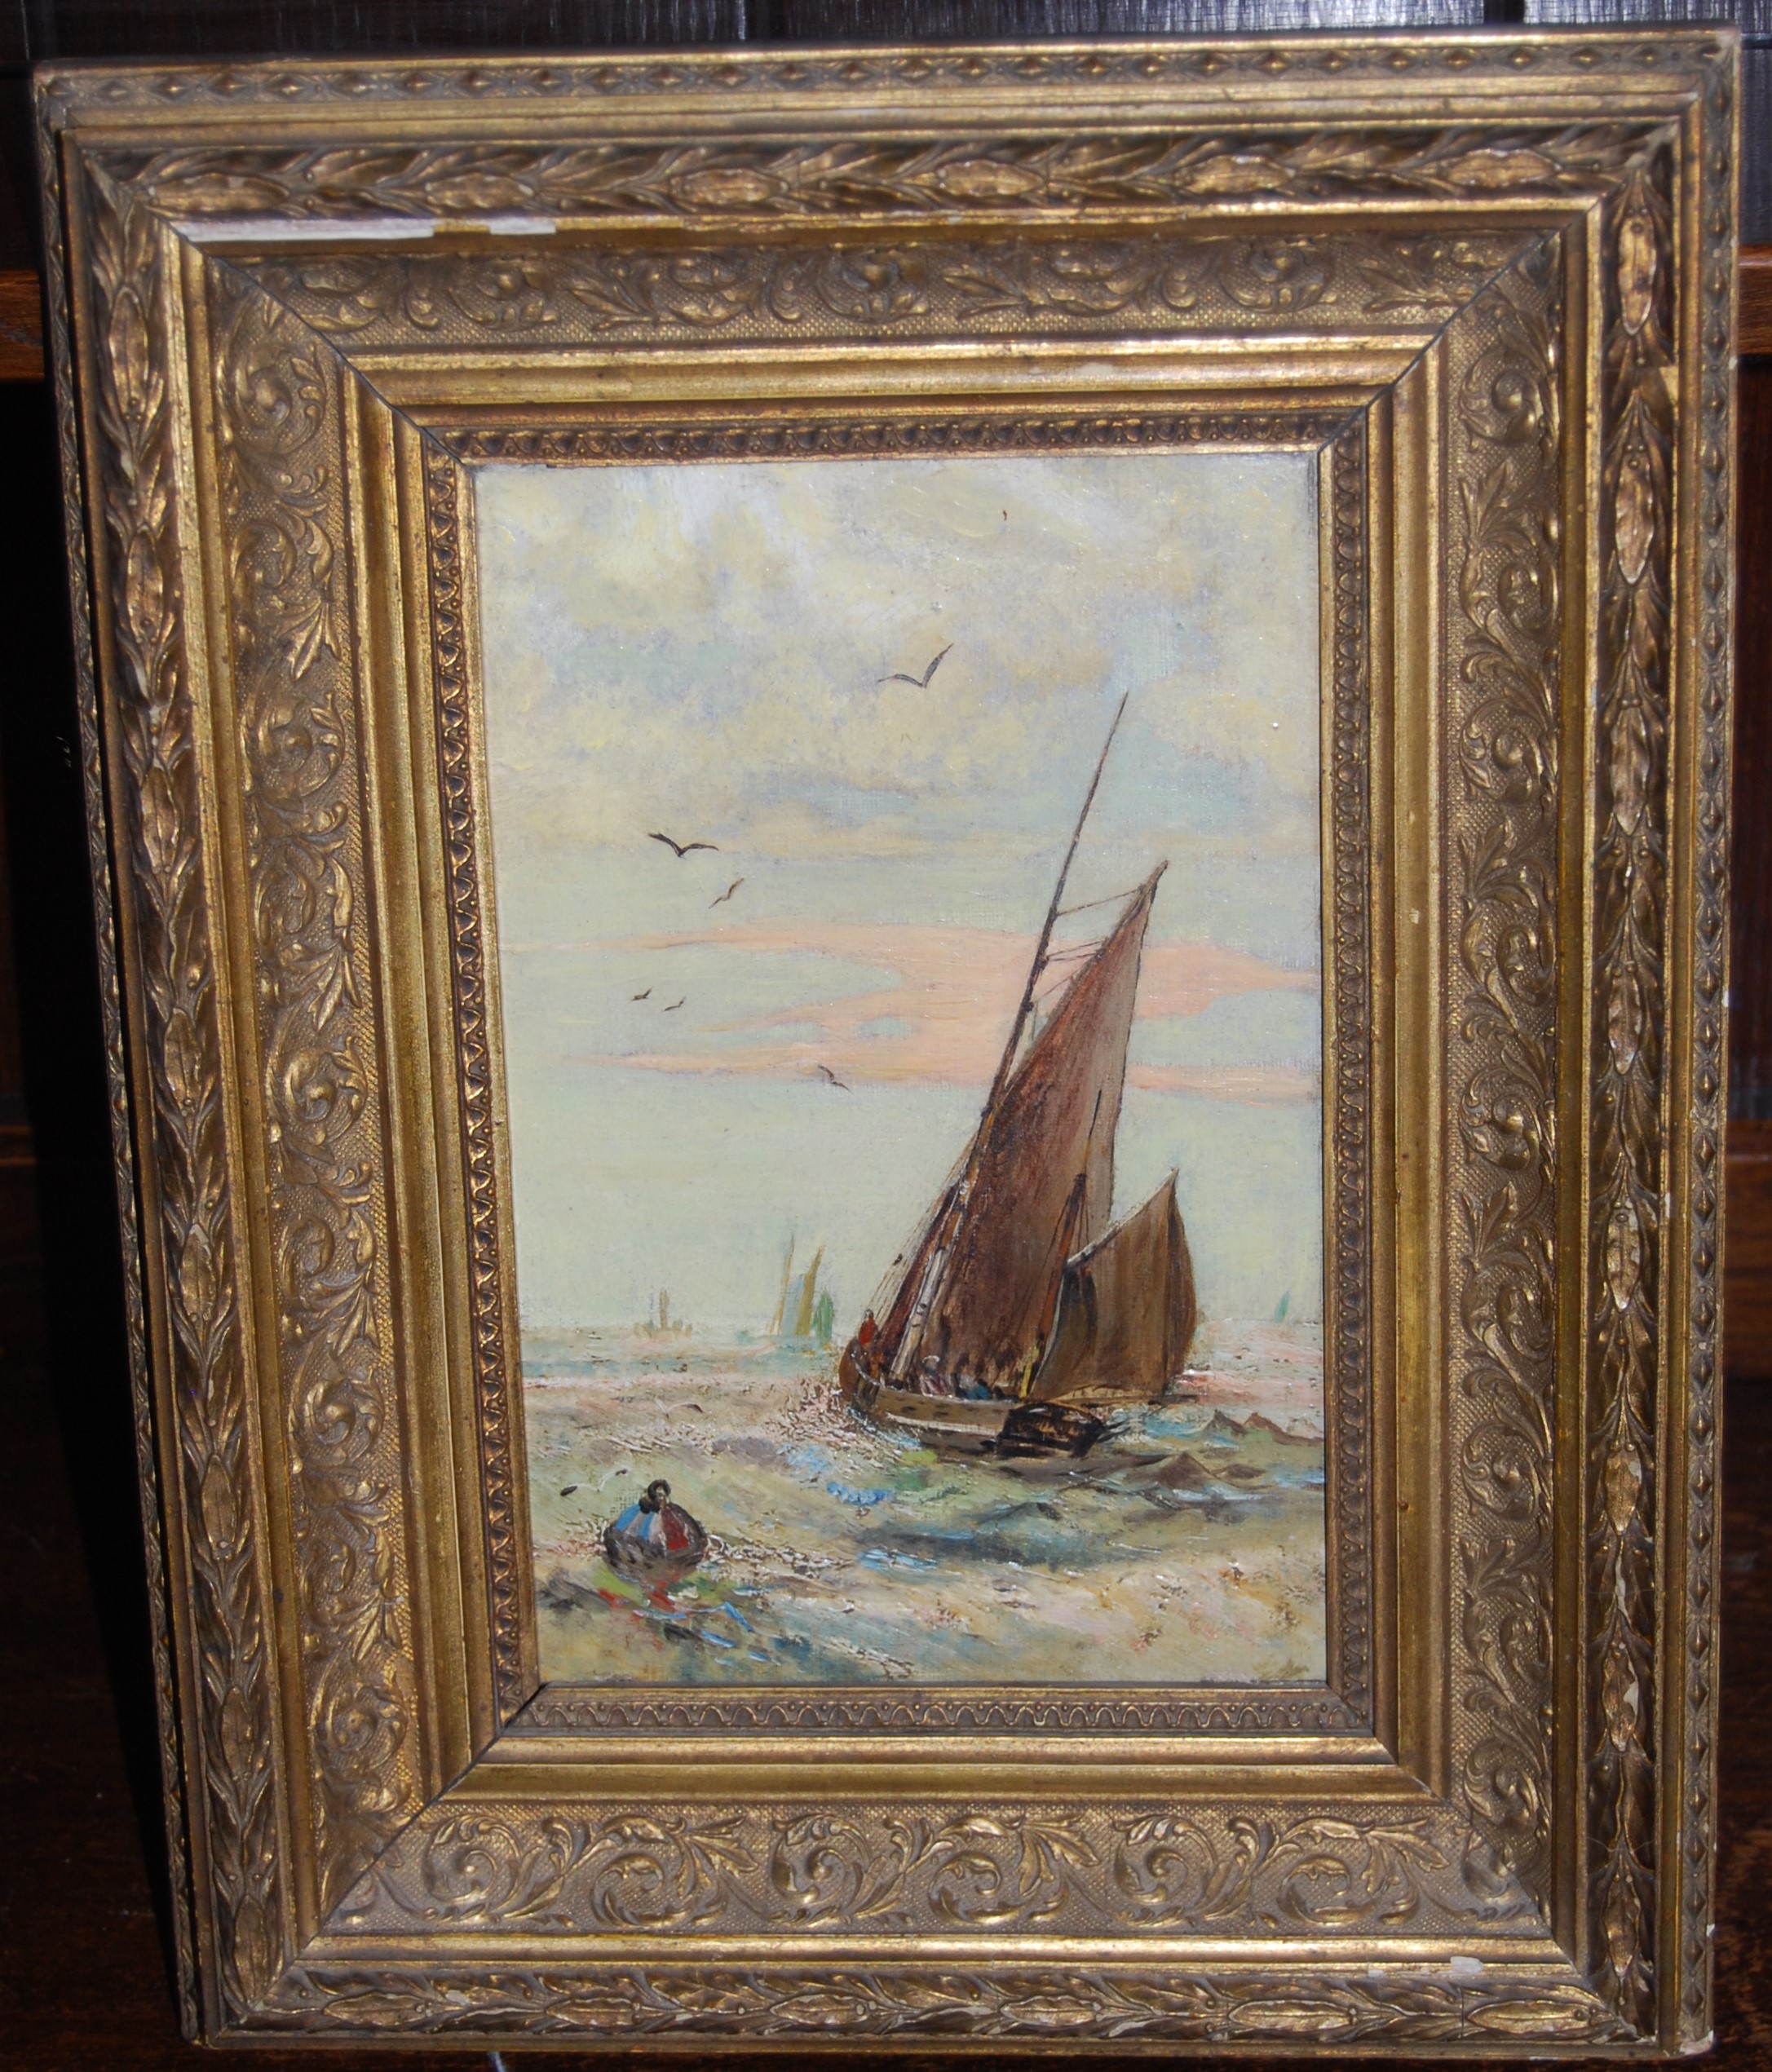 Circa 1900 school - Sailing boat on choppy seas, oil on canvas, 22 x 14cm